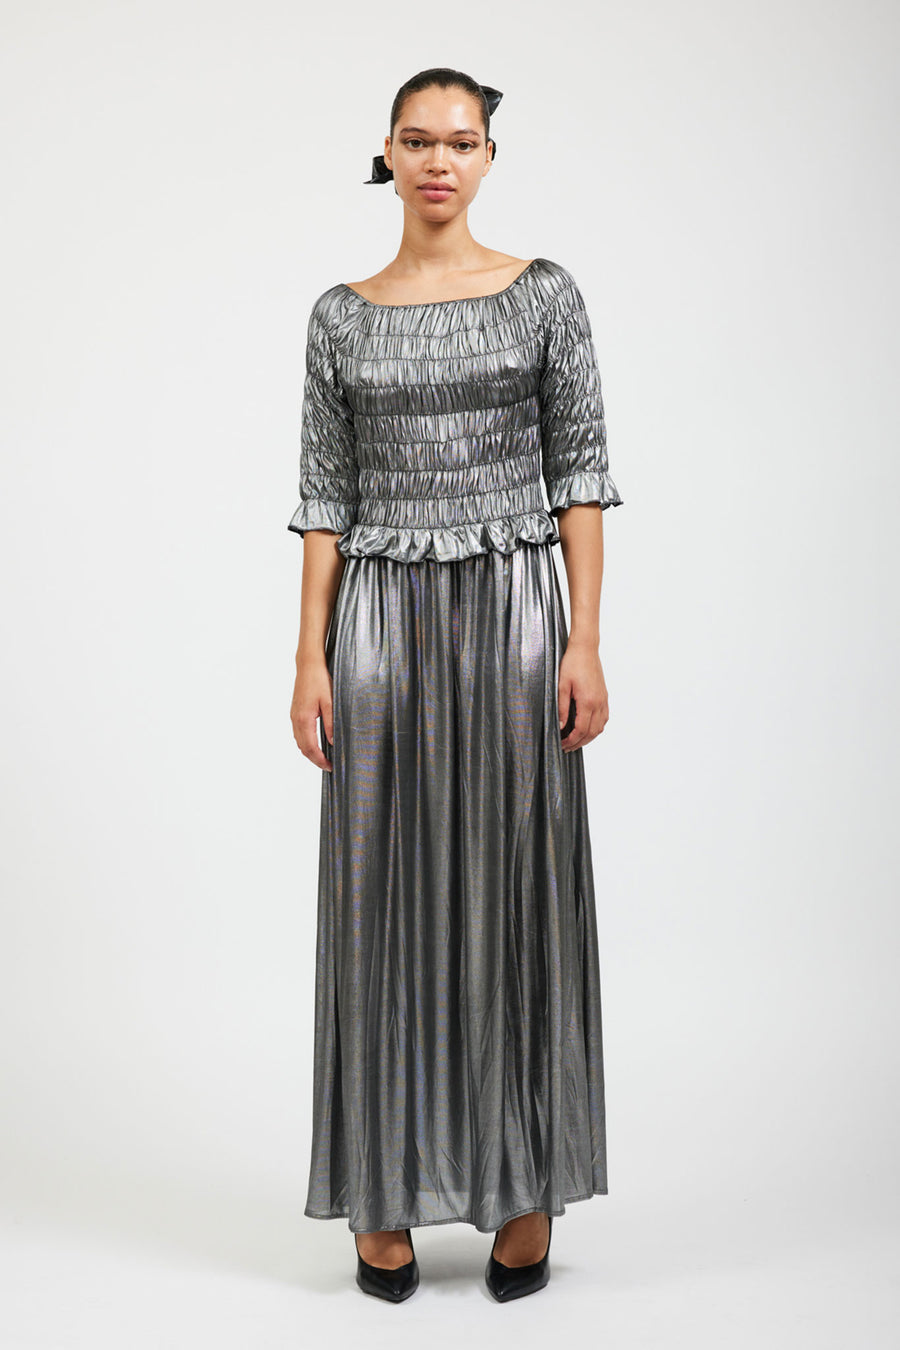 BATSHEVA - Oak Dress in Silver